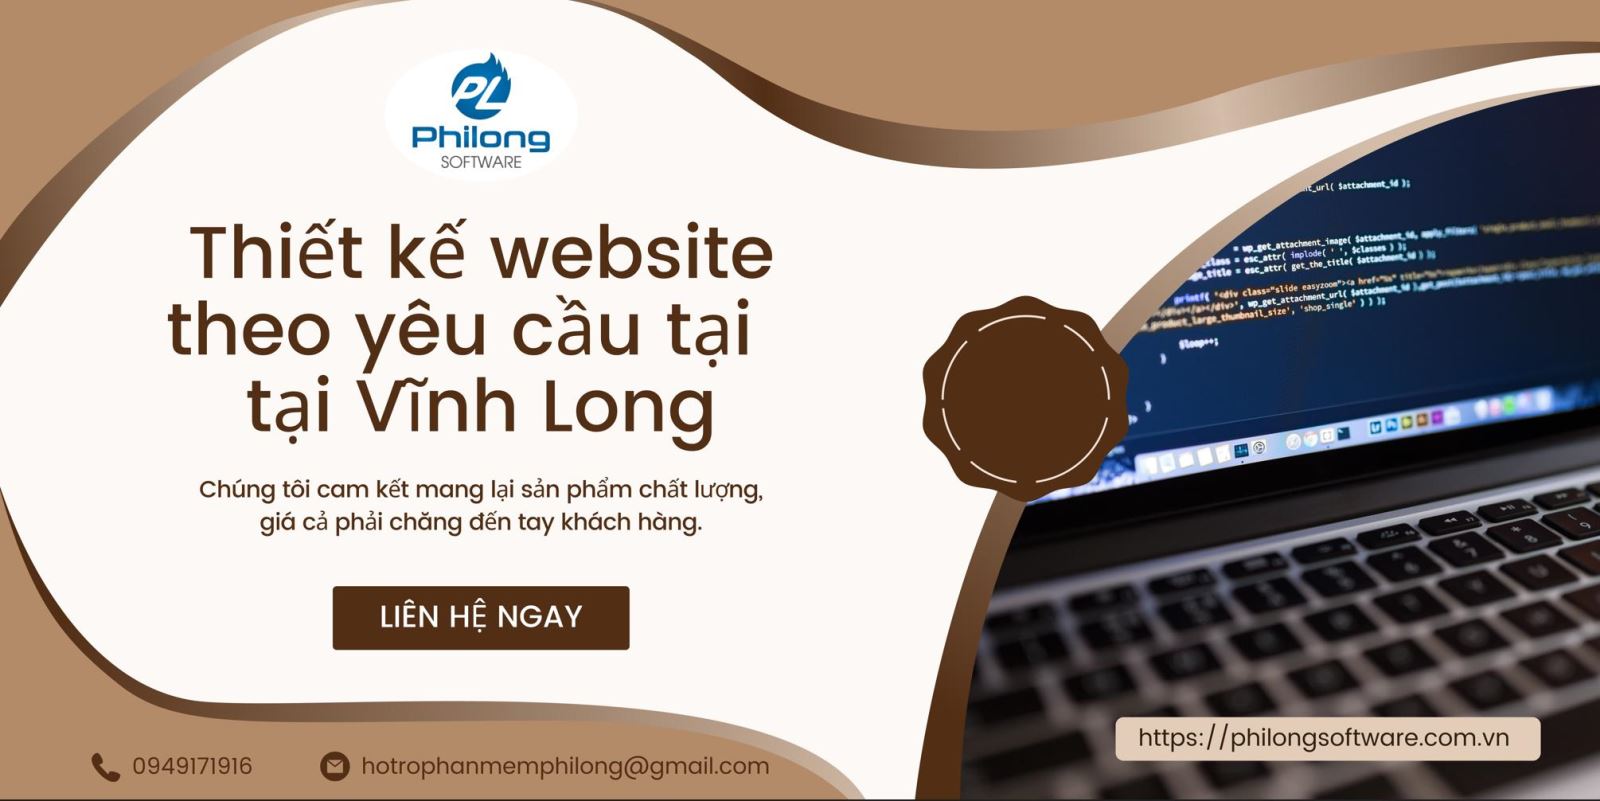 Thiết kế website theo yêu cầu tại Vĩnh Long | Uy tín | Giá rẻ